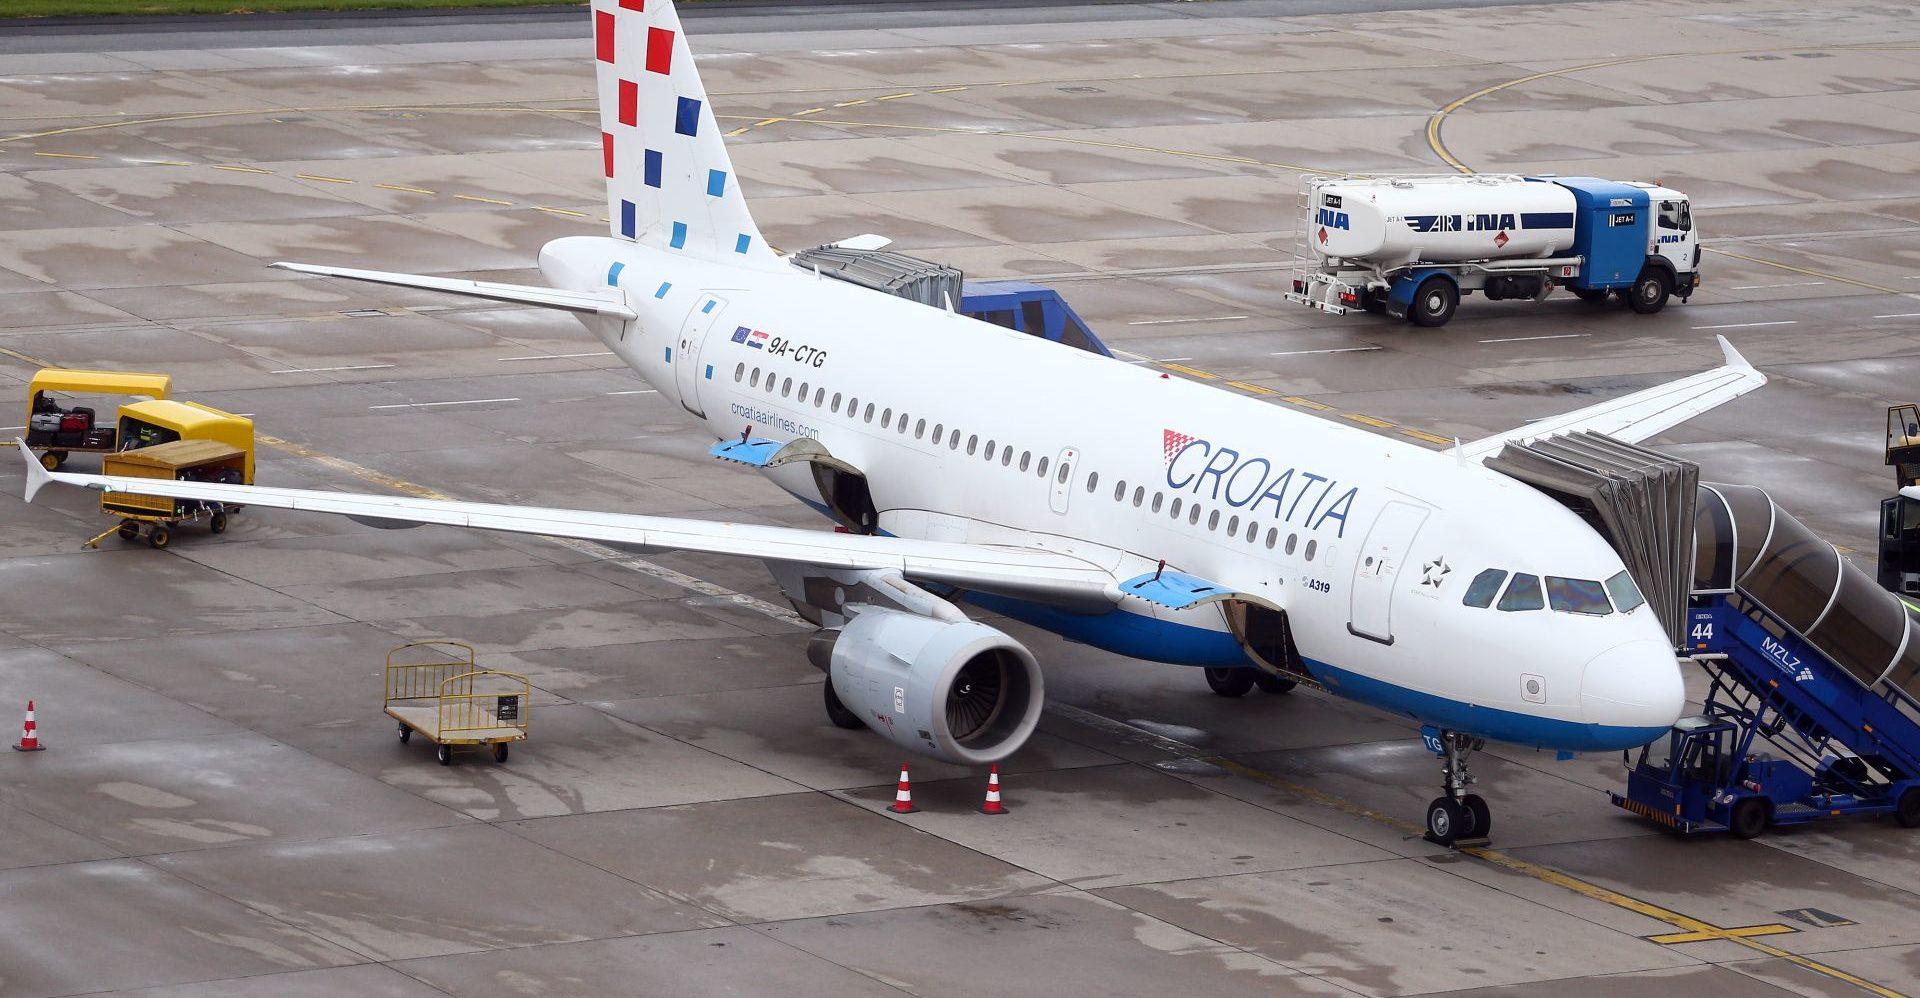 "Croatia Airlines" sutra će obaviti posljednji let za Sarajevo